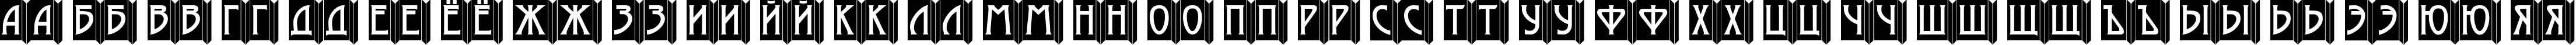 Пример написания русского алфавита шрифтом a_ModernoEmb